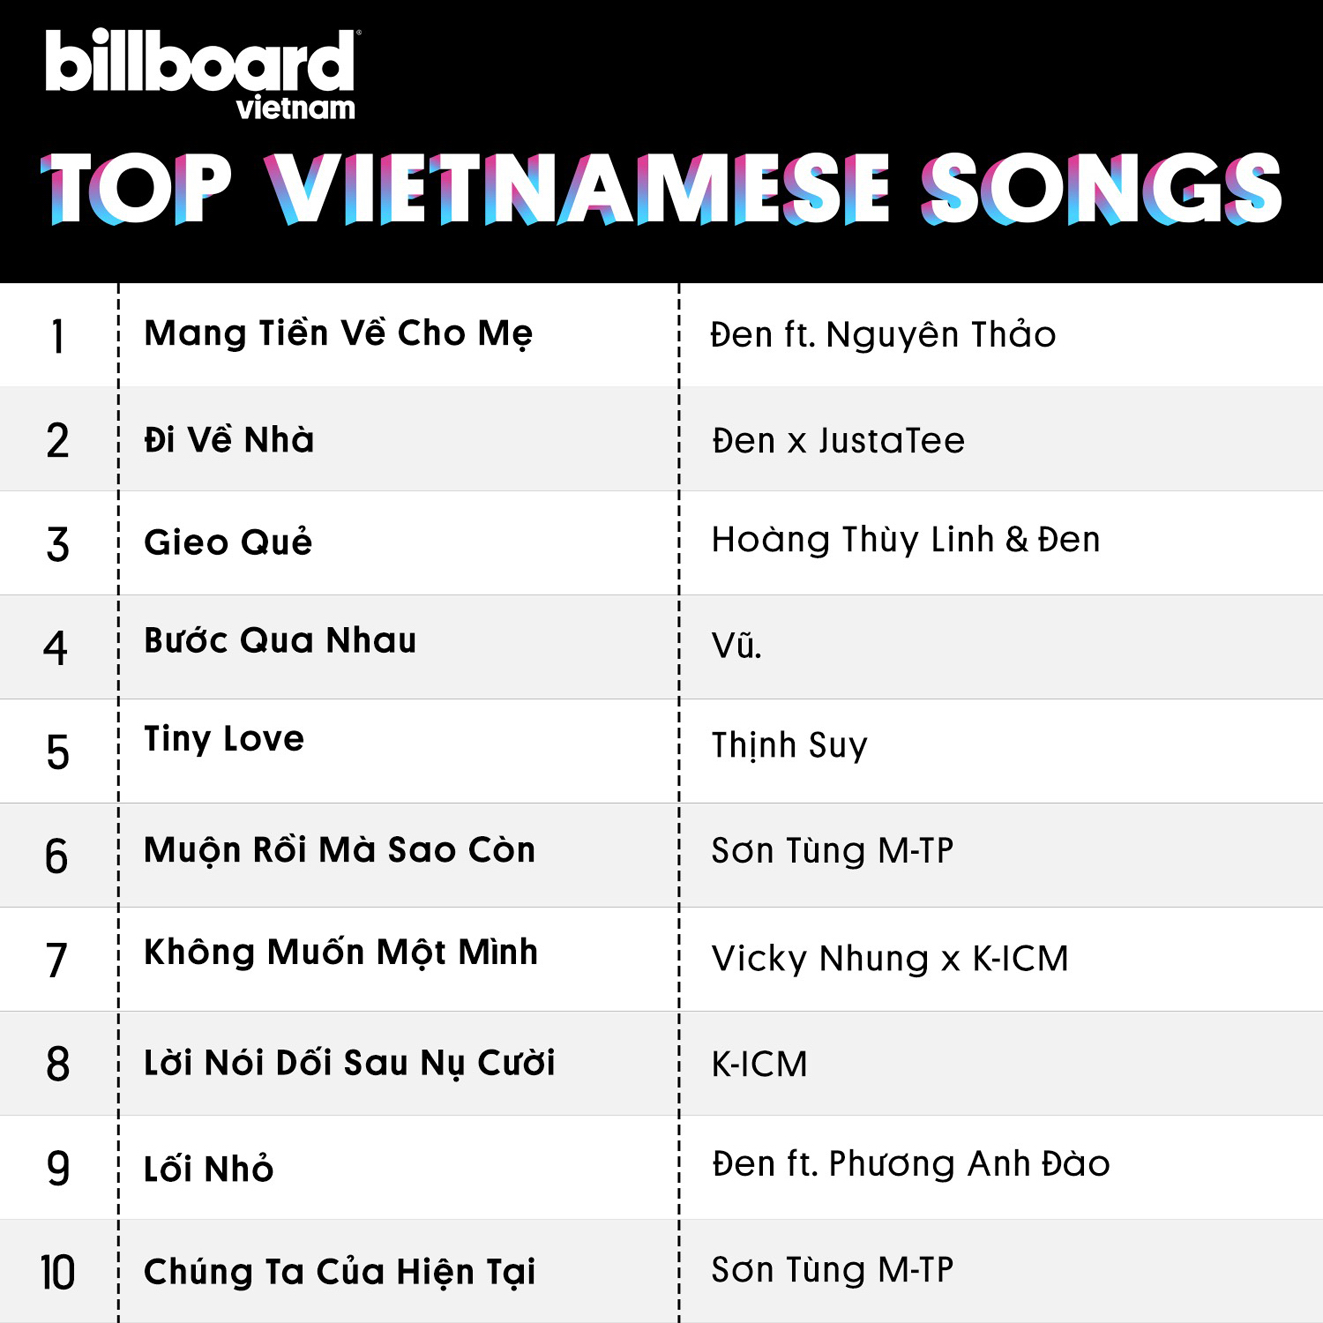 Top 10 ca khúc Việt xuất hiện trong bảng xếp hạng Billboard Vietnam Top Vietnamese Songs